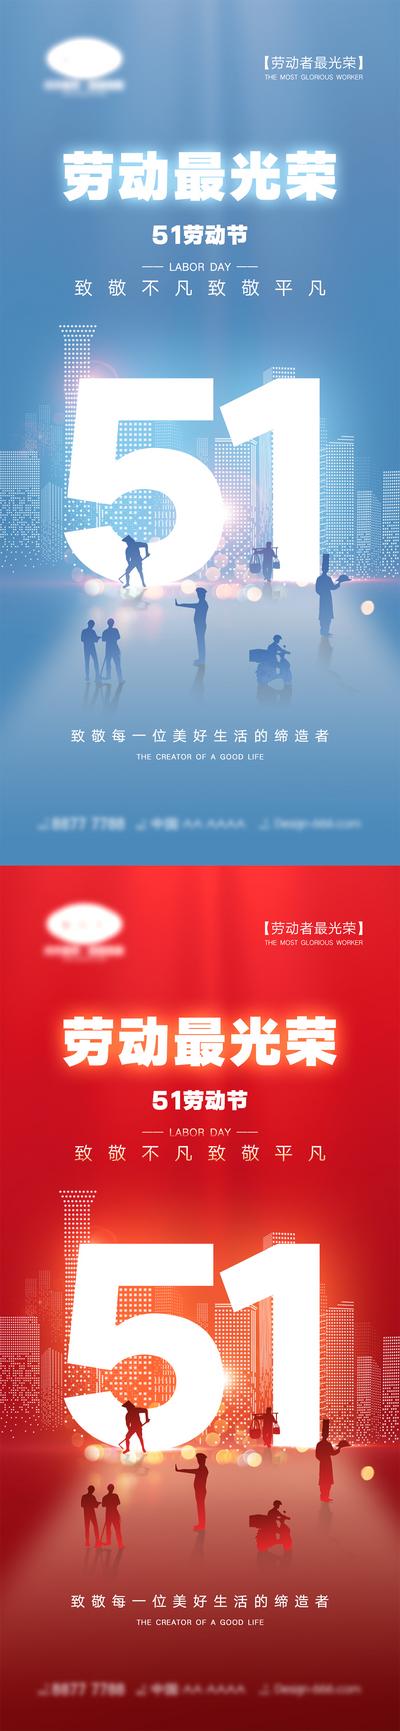 南门网 海报 五一劳动节 51 劳动节 国际劳动节 宣传